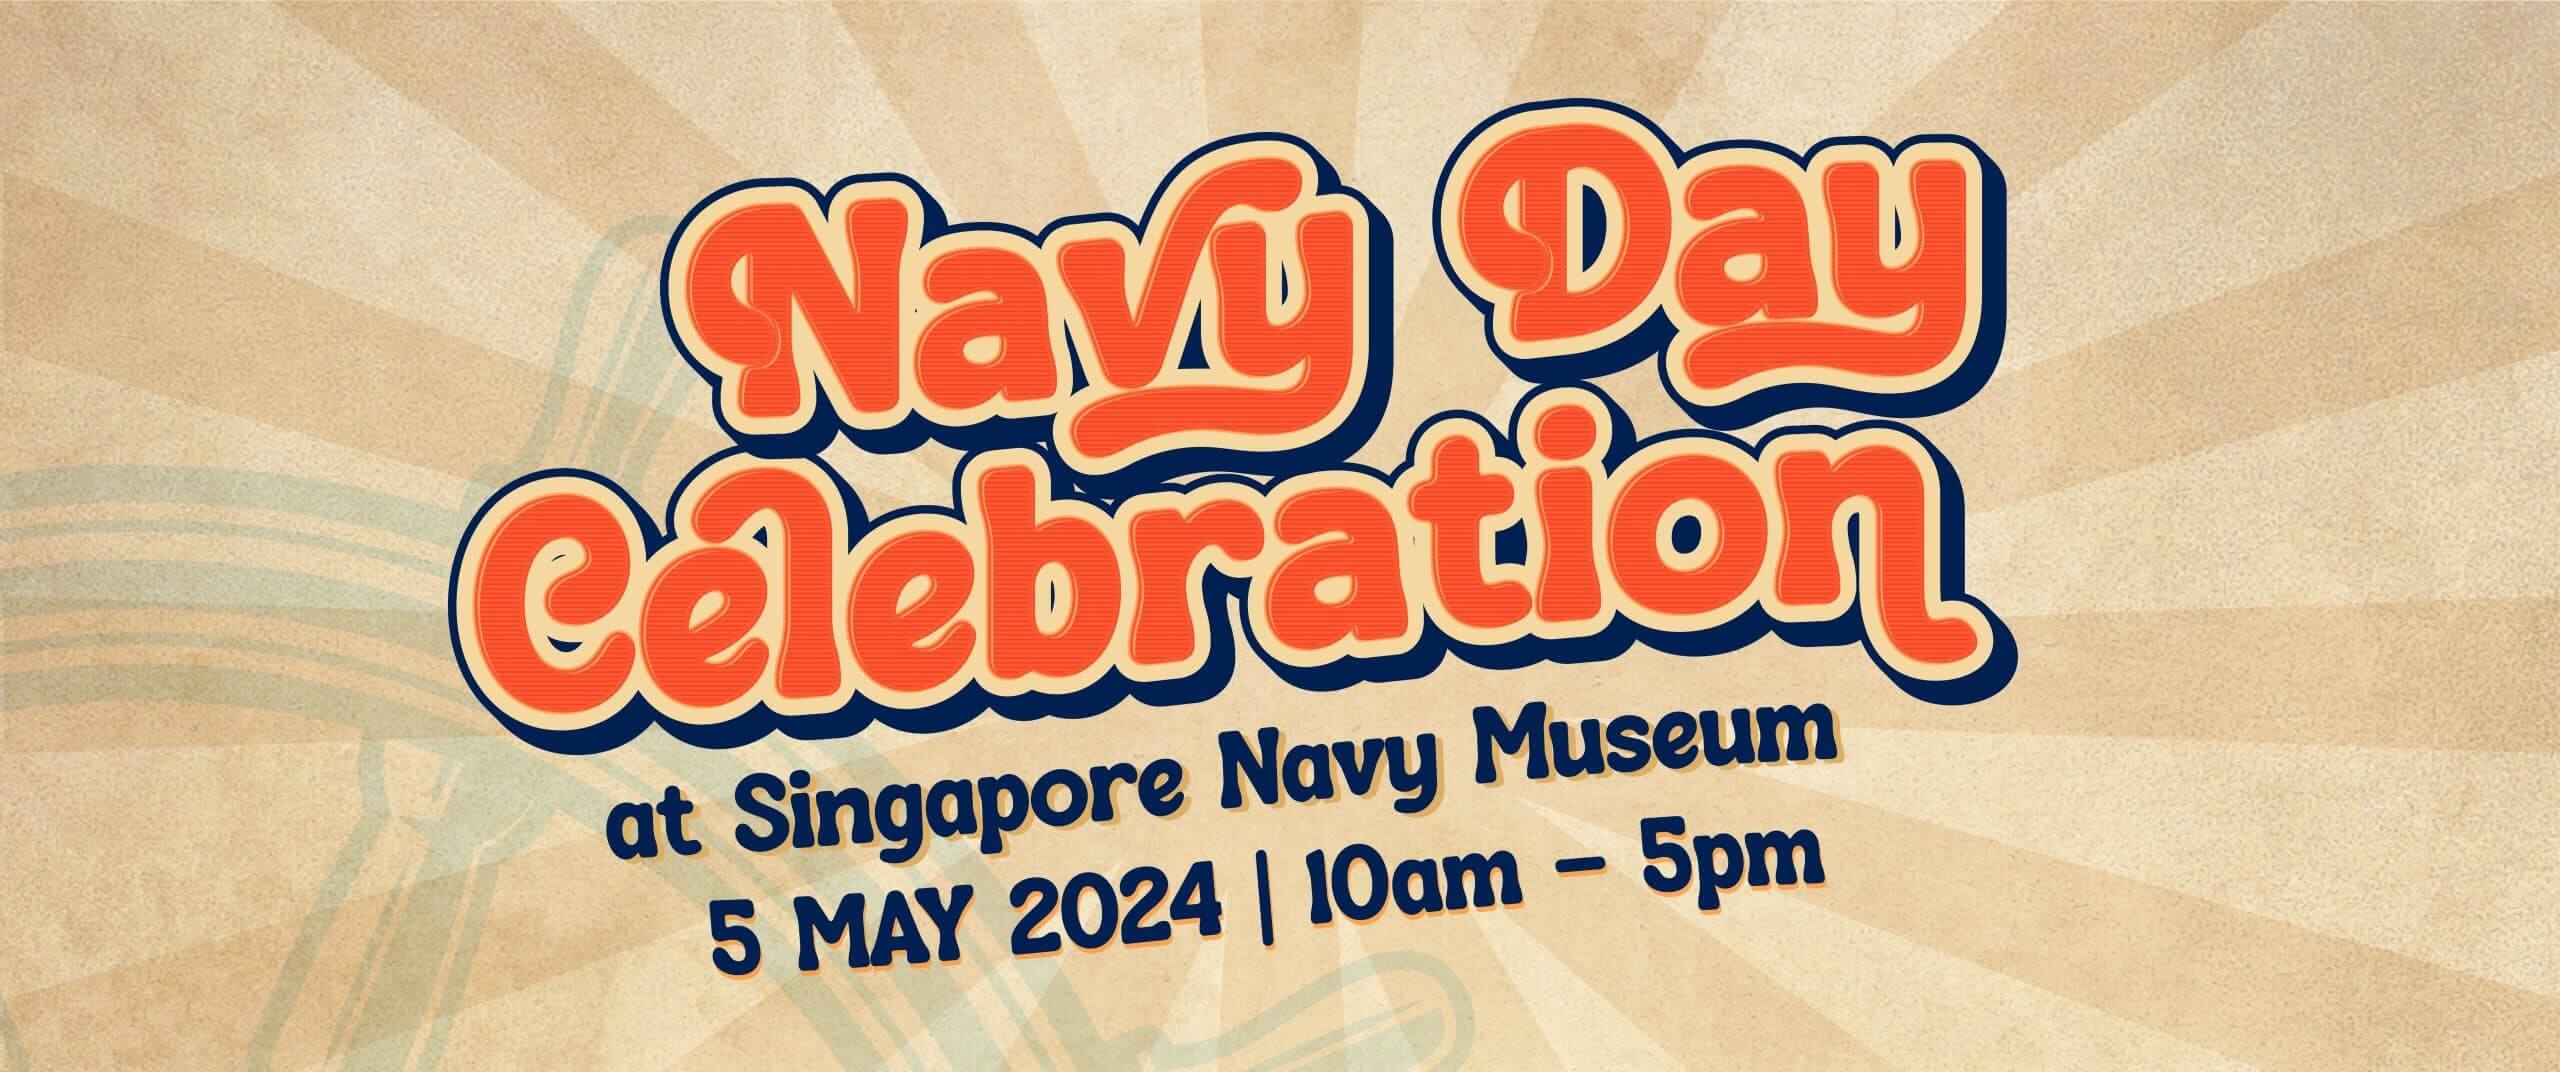 Navy Day Celebration